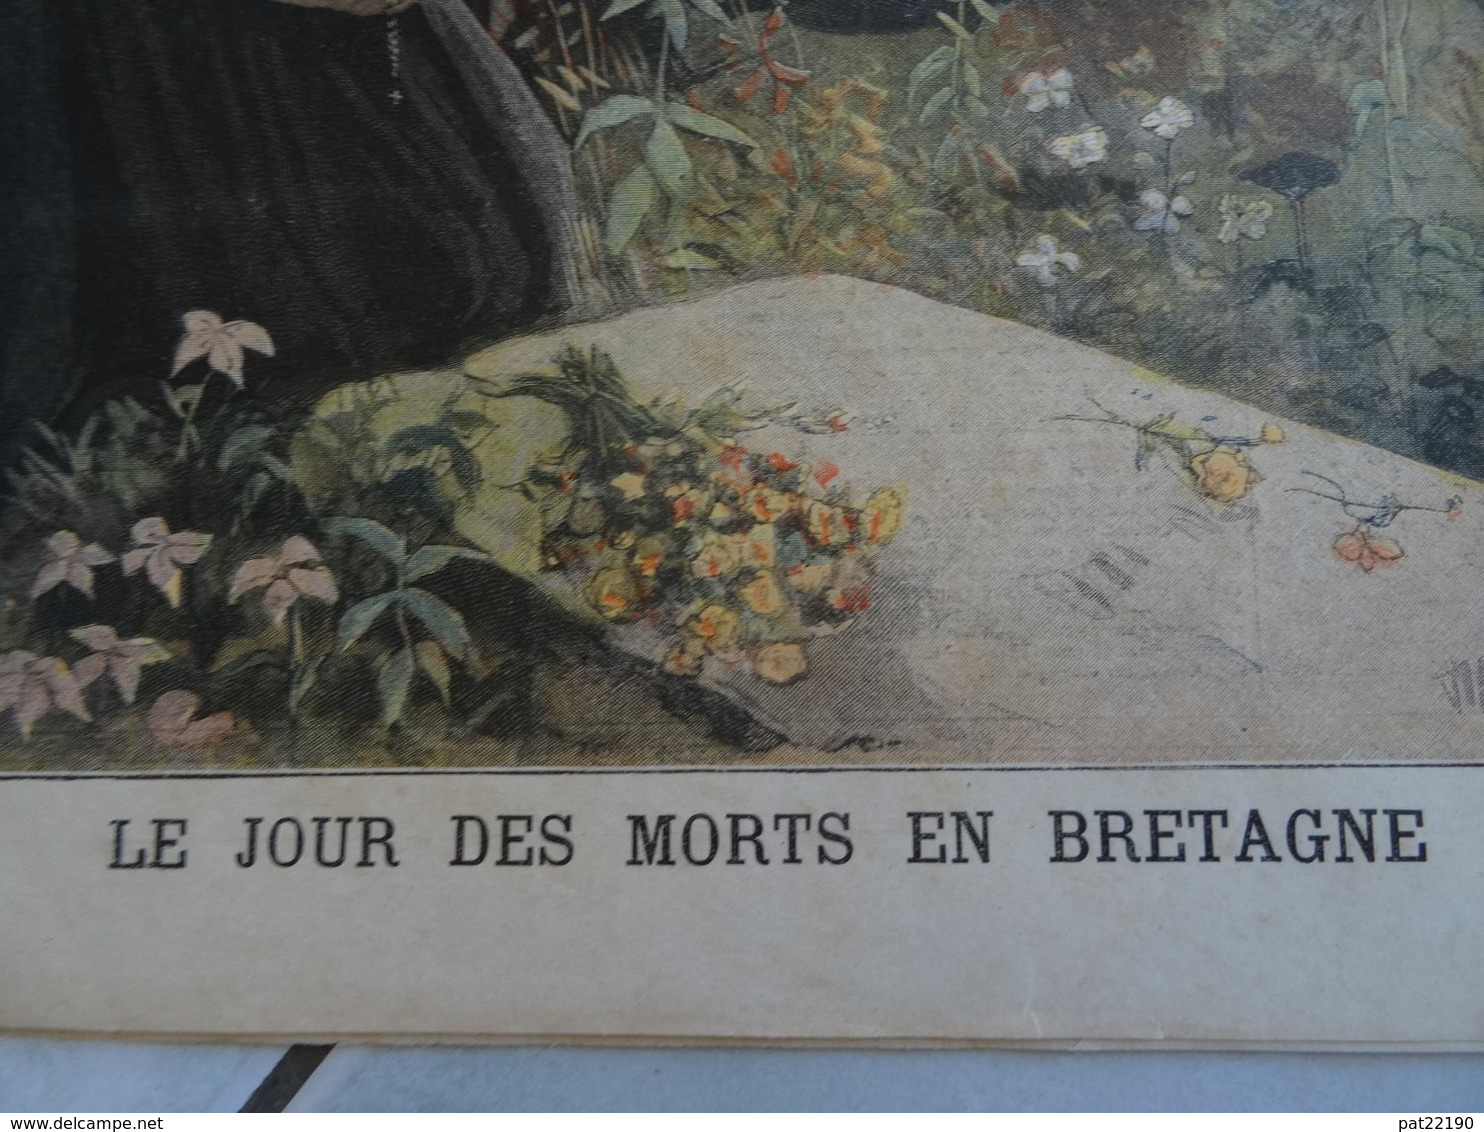 Le Petit Journal 1897 Prefet De Police Blanc / Tradition Le Jour Des Morts En Bretagne / Joseph Vacher L'eventreur - 1850 - 1899